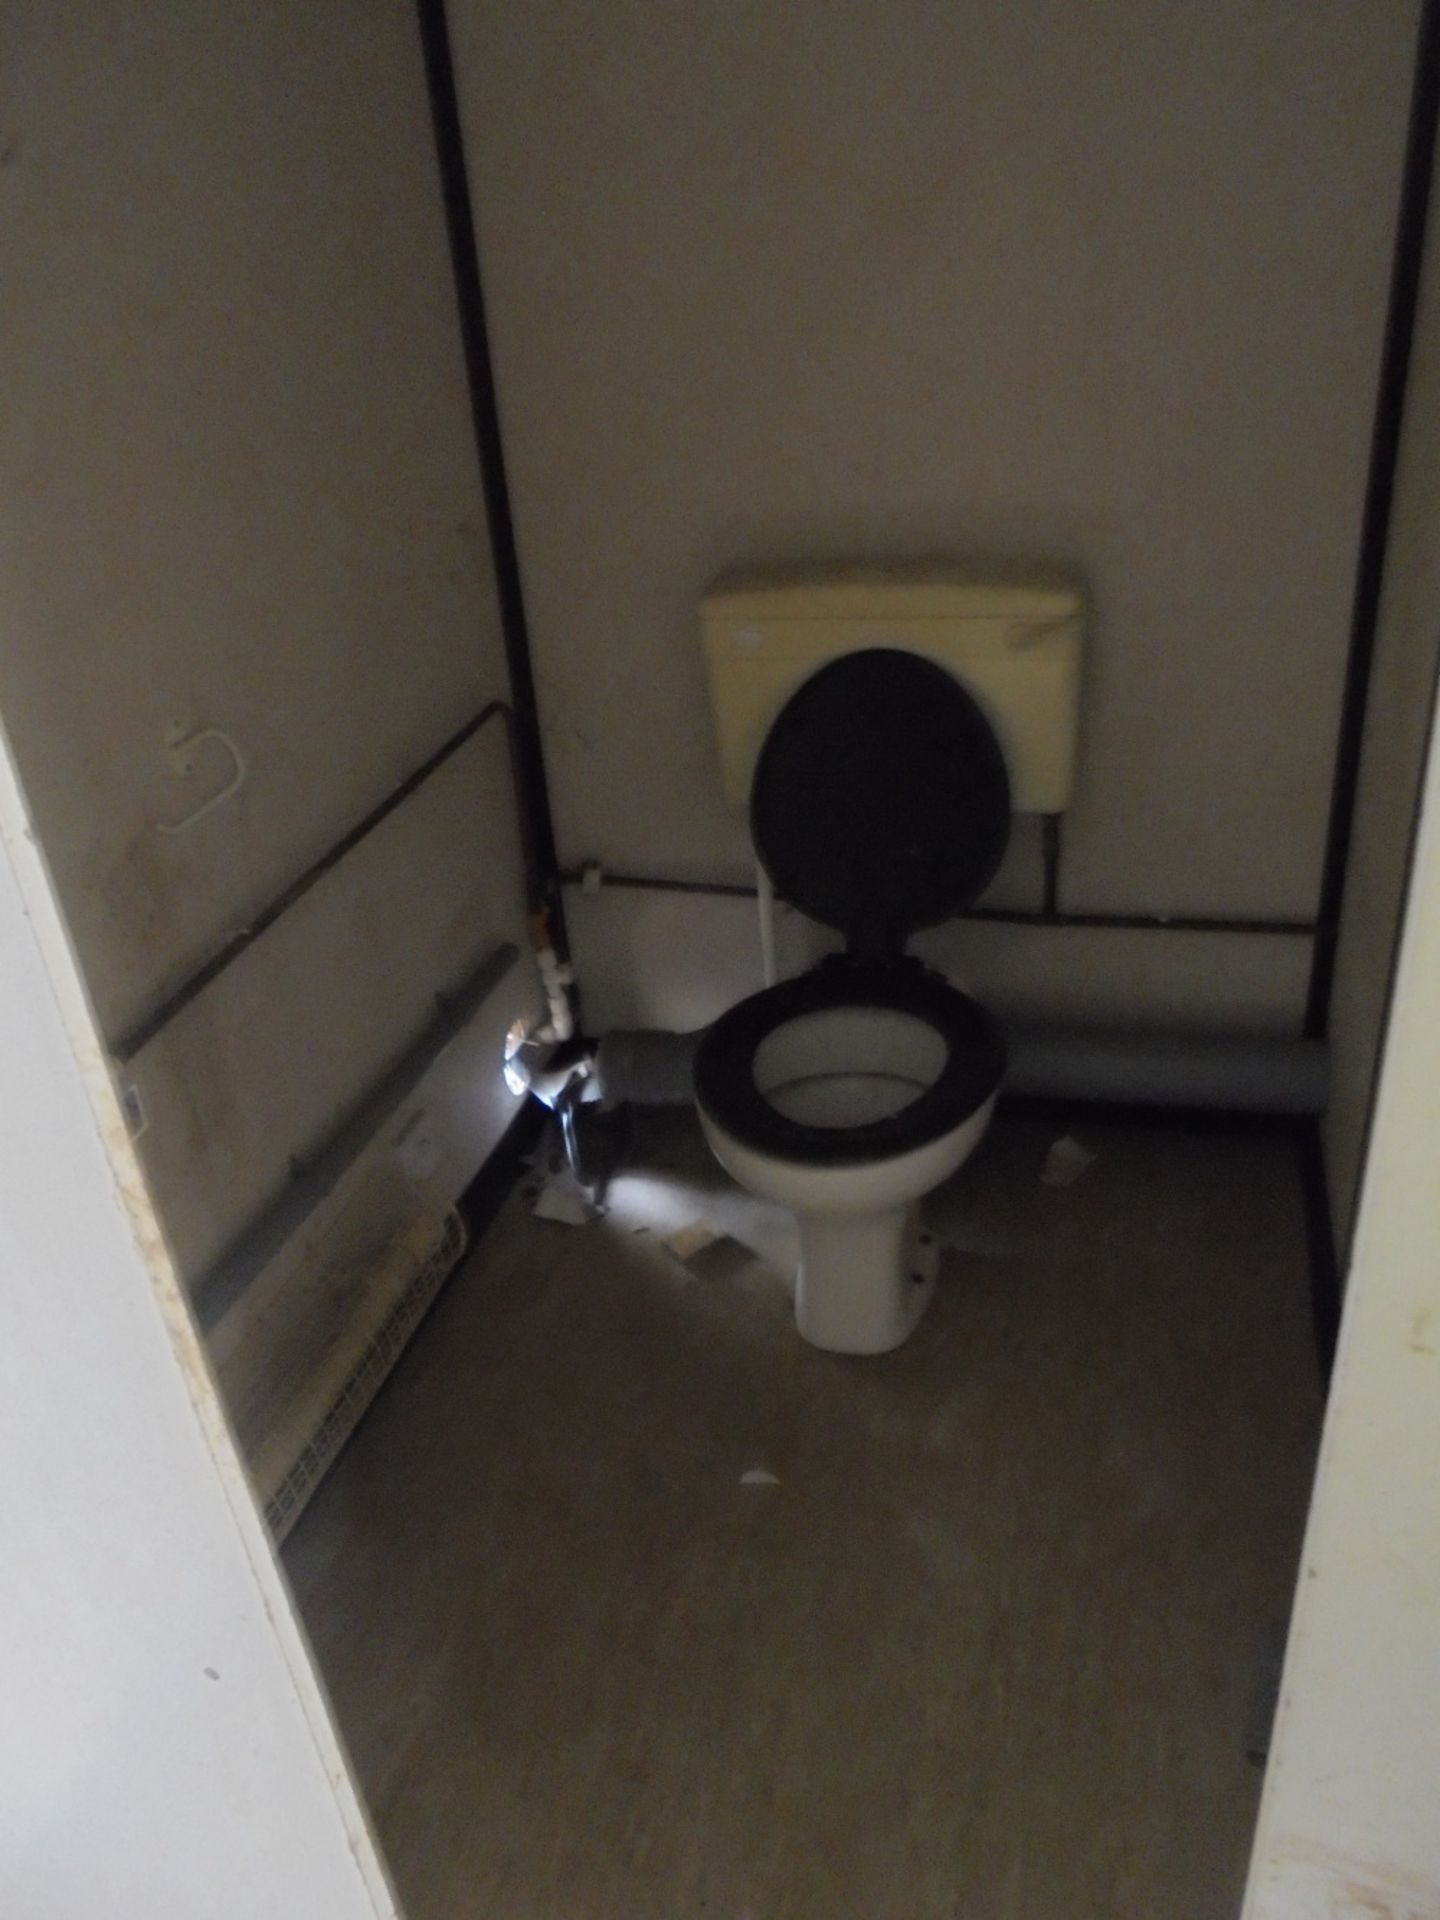 J22018 16ft x 9ft Anti Vandal 3+1 Toilet - Image 8 of 10